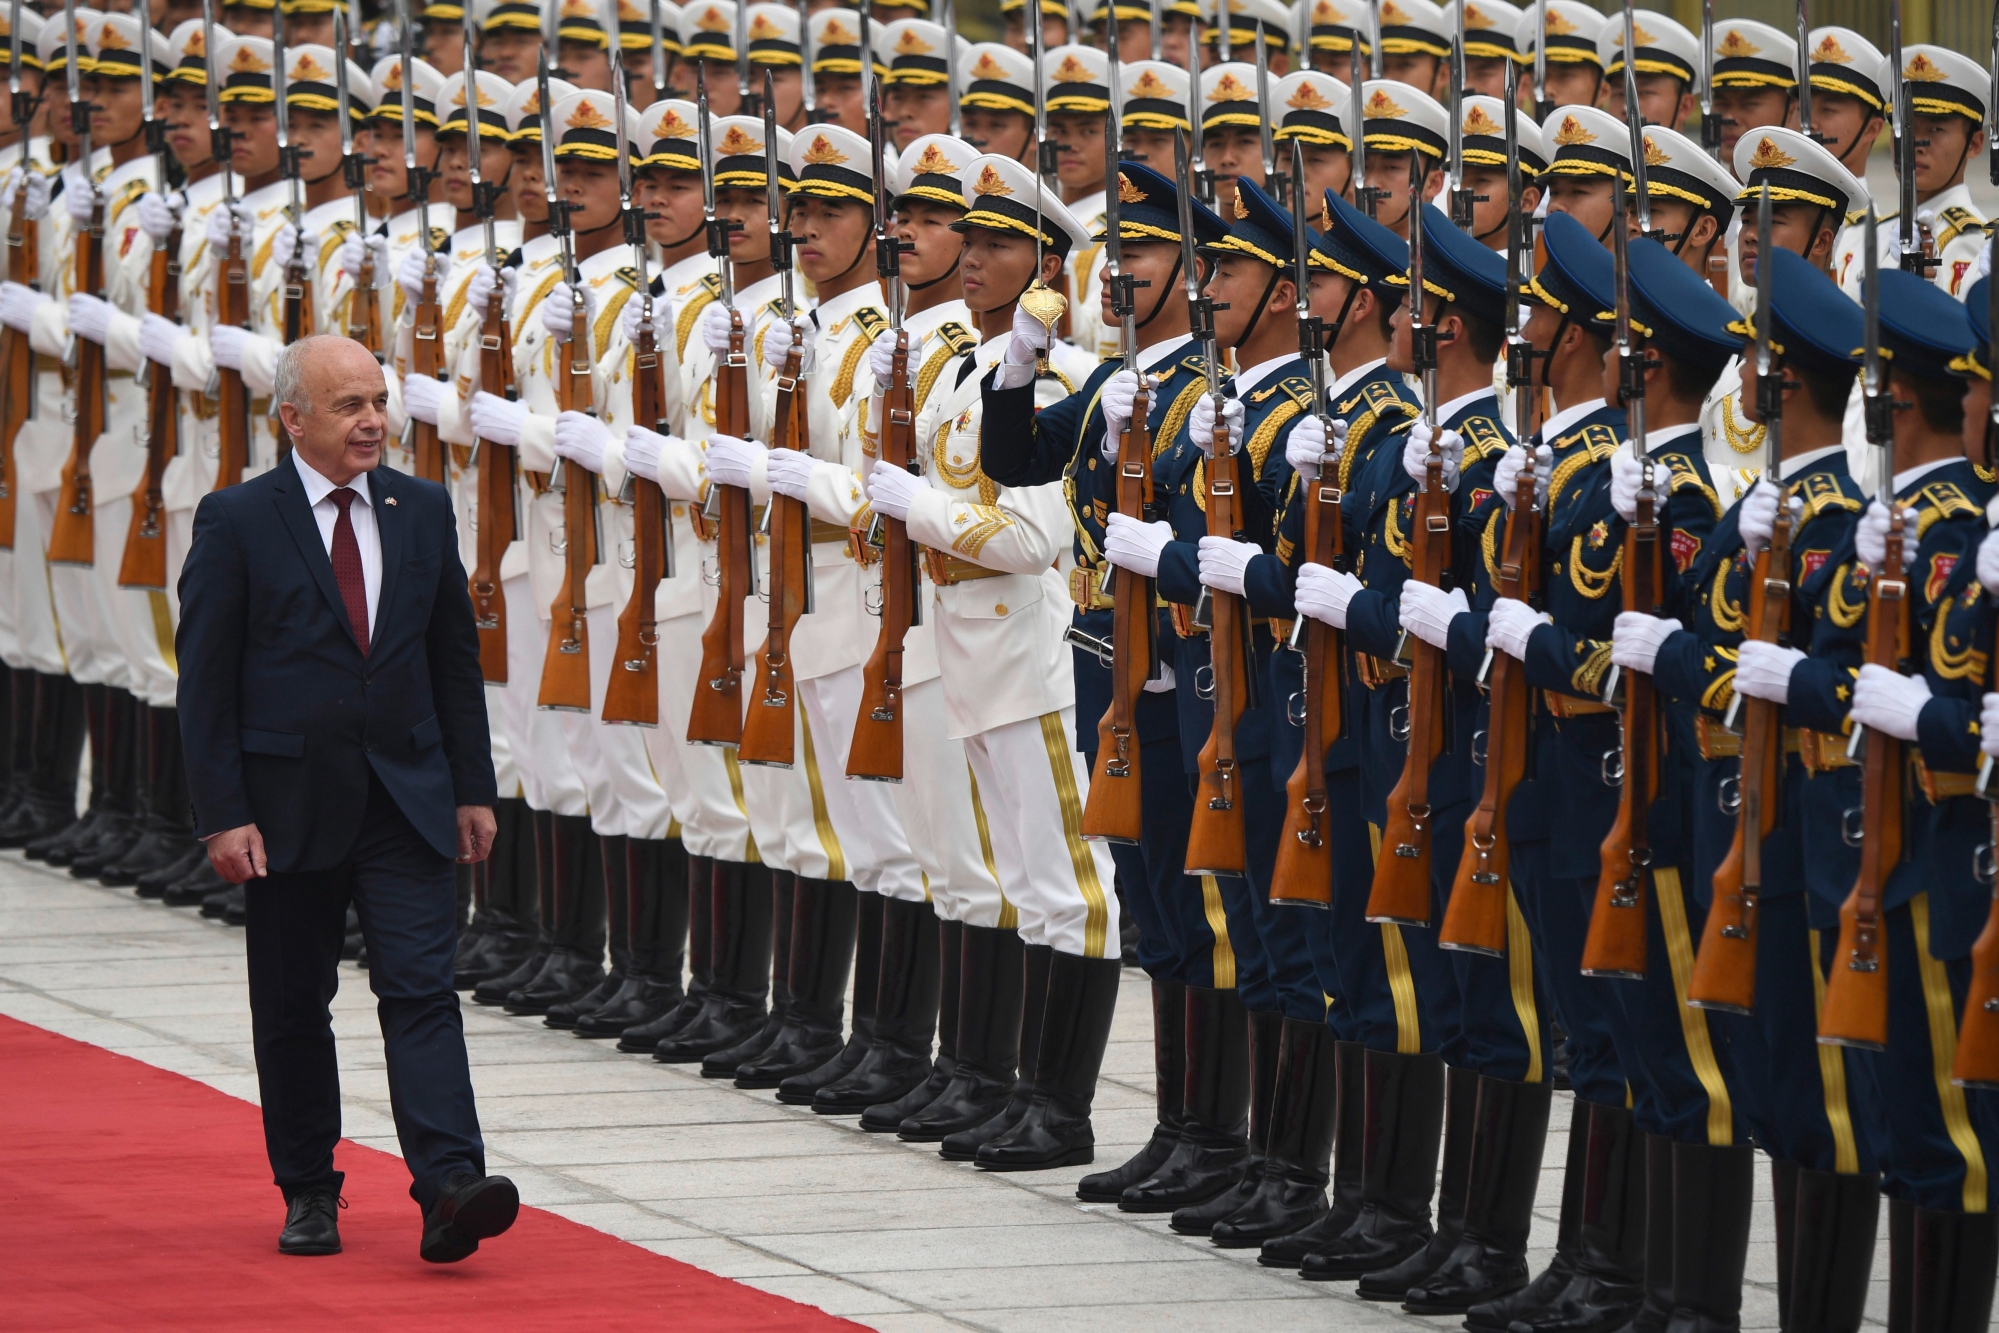 epa07535659 SwitzerlandÄôs President Ueli Maurer reviews honor guards during a welcome ceremony at the Great Hall of the People in Beijing, China, 29 April 2019.  EPA/MADOKA IKEGAMI / POOL CHINA SWITZERLAND DIPLOMACY